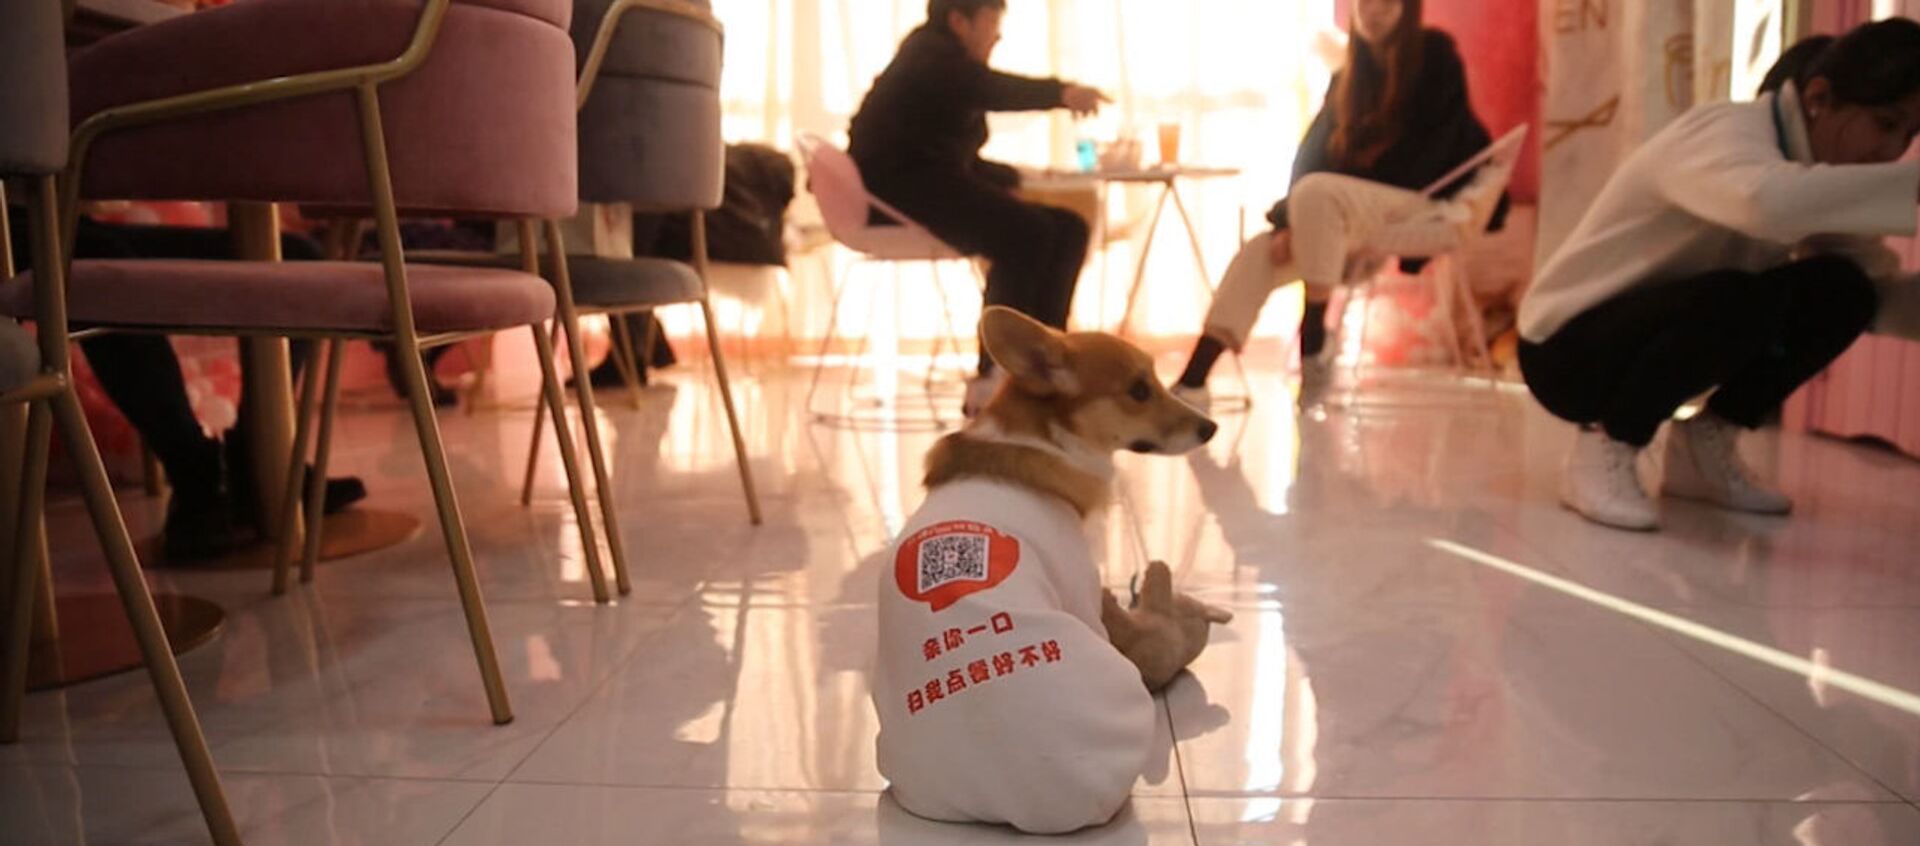 Собаки работают официантами в одном из кафе Шанхая - Sputnik Արմենիա, 1920, 20.12.2018